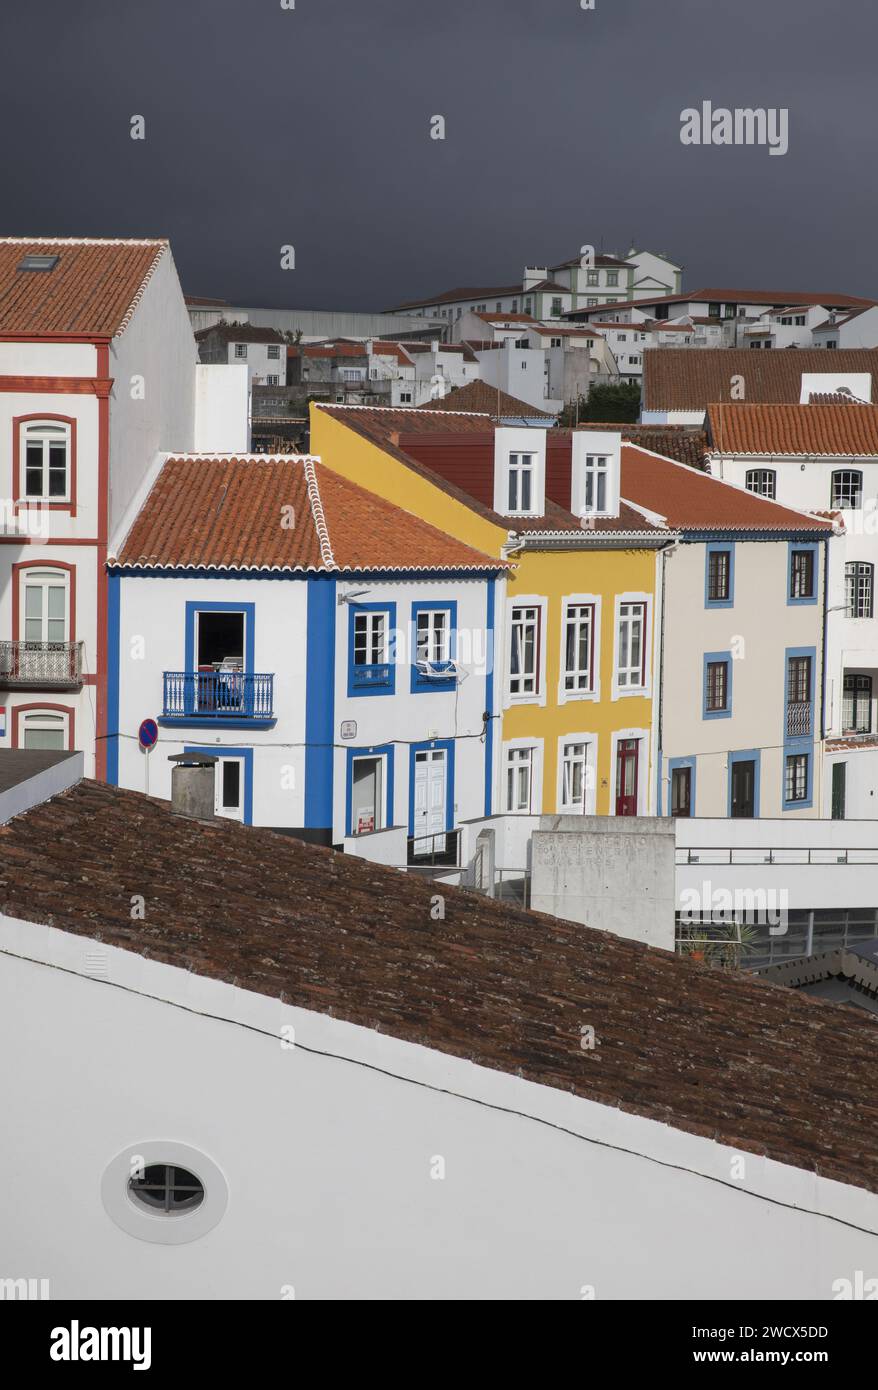 Portugal, archipel des Açores, île de Terceira, Angra do Heroismo, façades colorées de bâtiments coloniaux avec des toits de tuiles dans le centre historique Banque D'Images